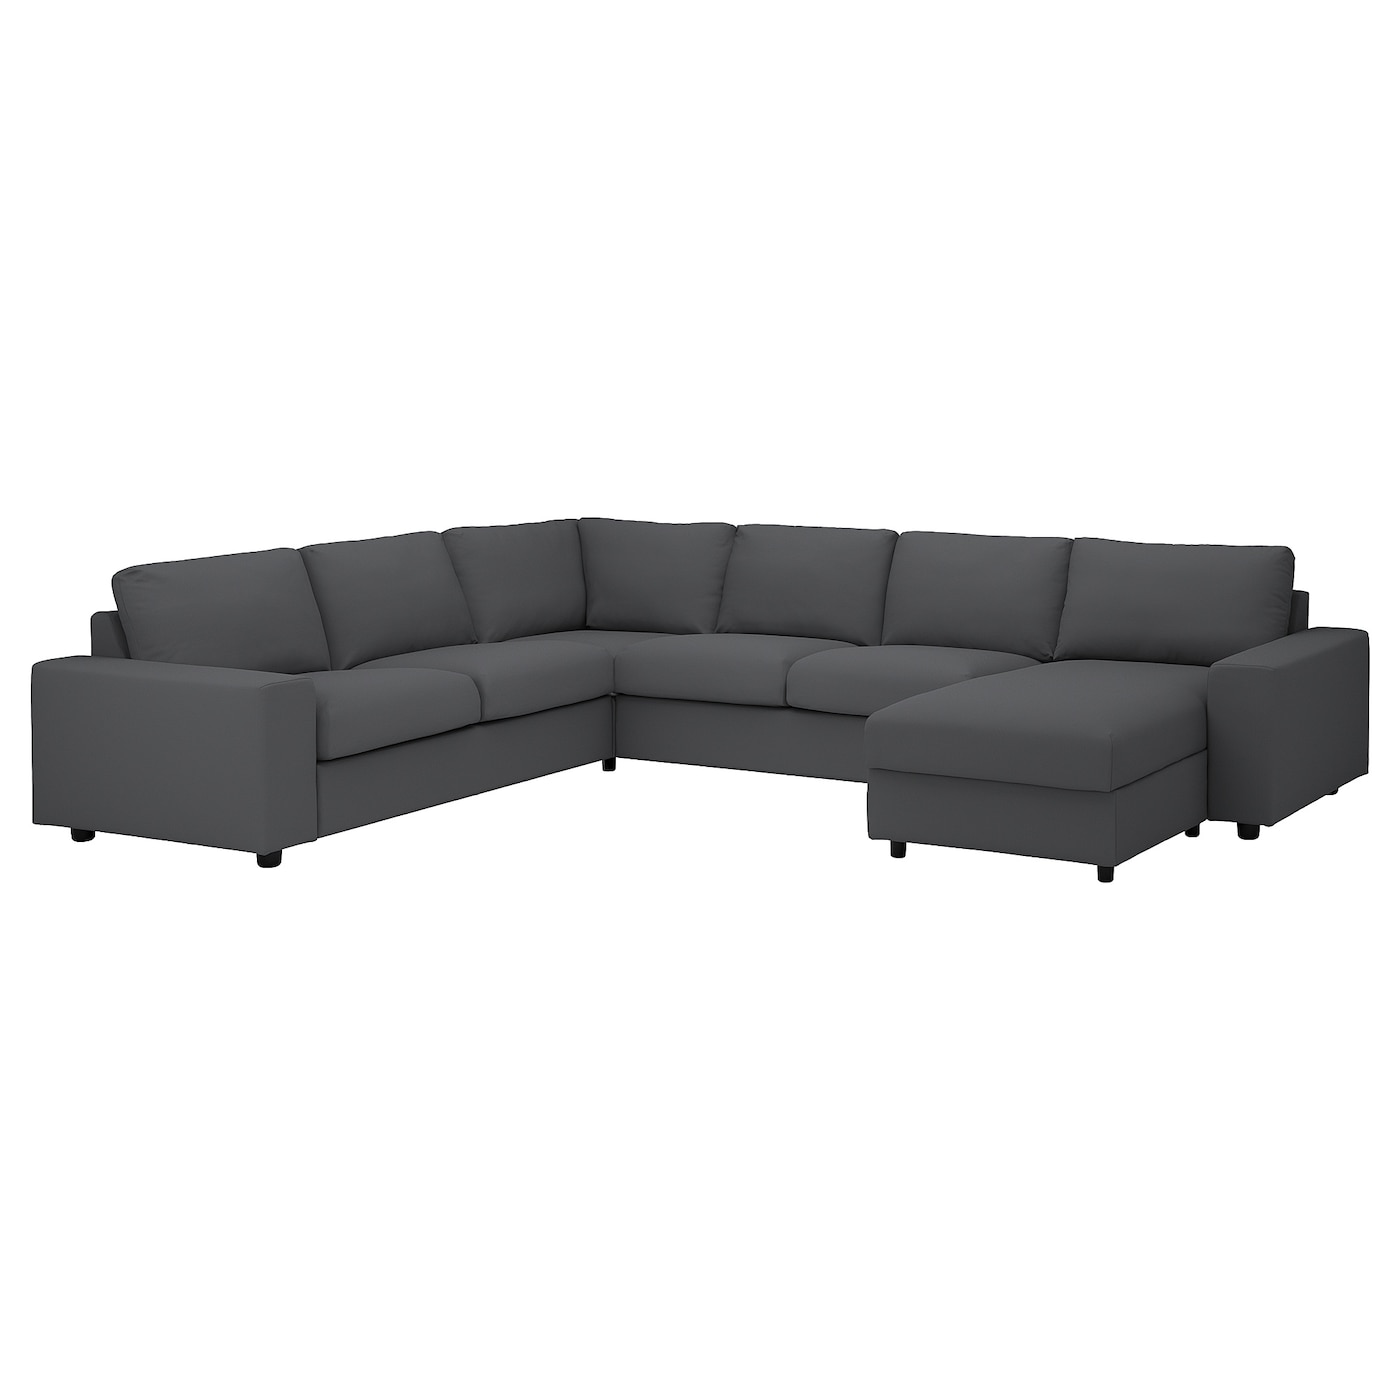 ВИМЛЕ Диван угловой, 5-местный. диван+диван, с широкими подлокотниками/Халларп серый VIMLE IKEA